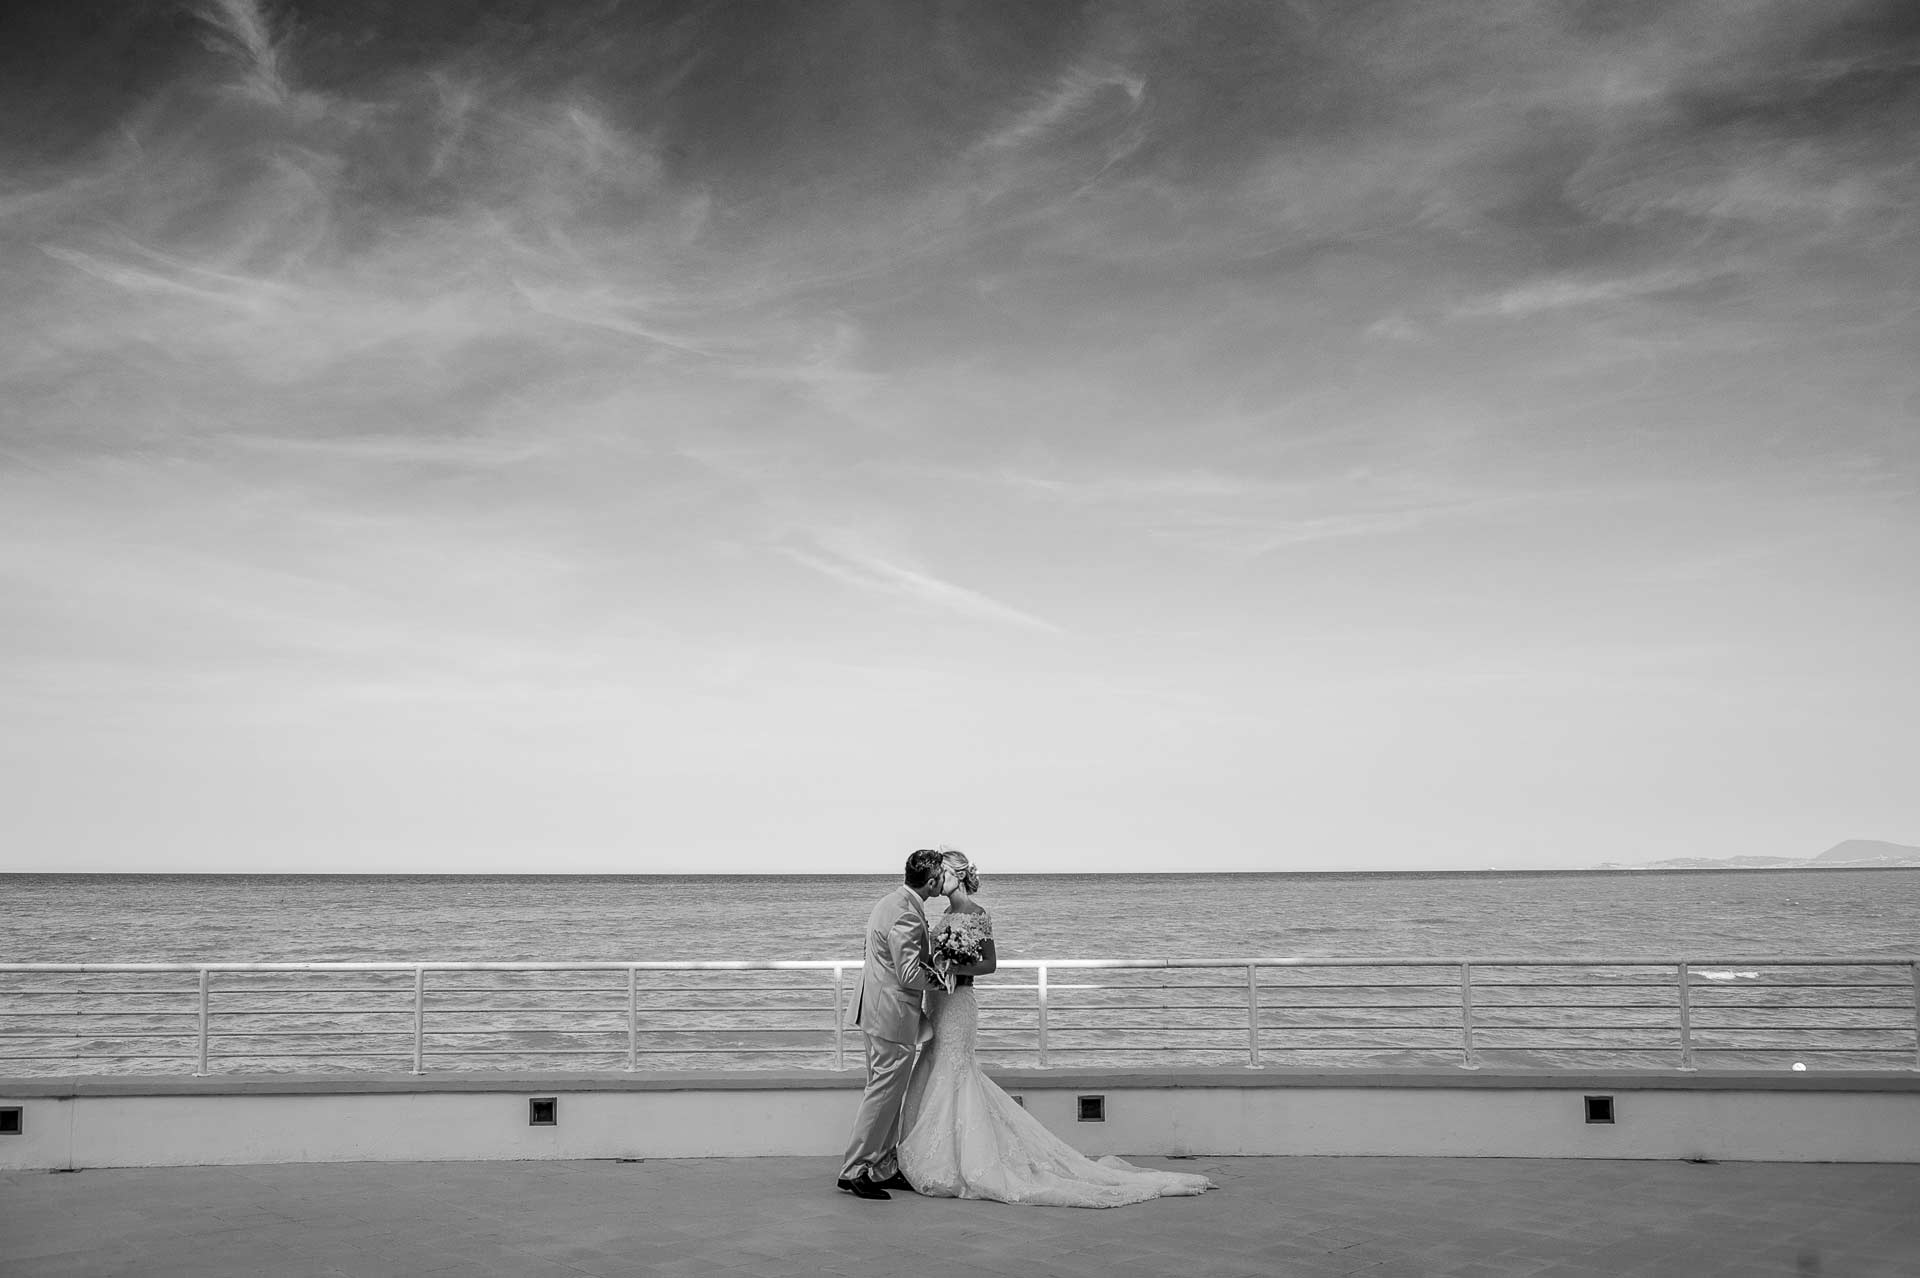 fotografo professionista italia, fotografia di matrimonio bacio sposi al mare